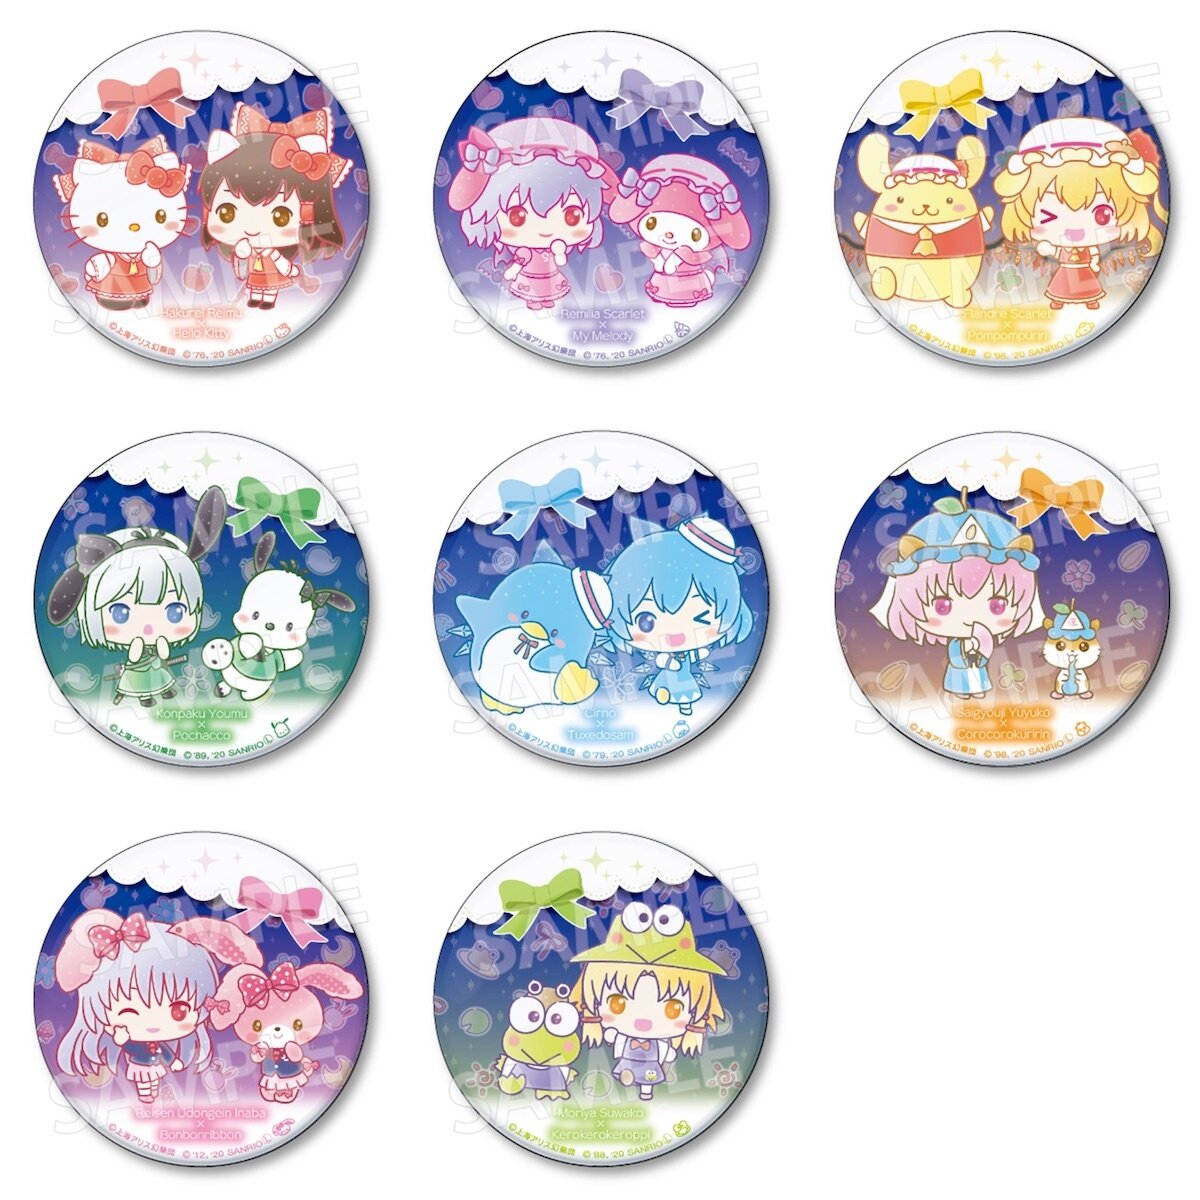 Sanrio Team USA Collectible Pins